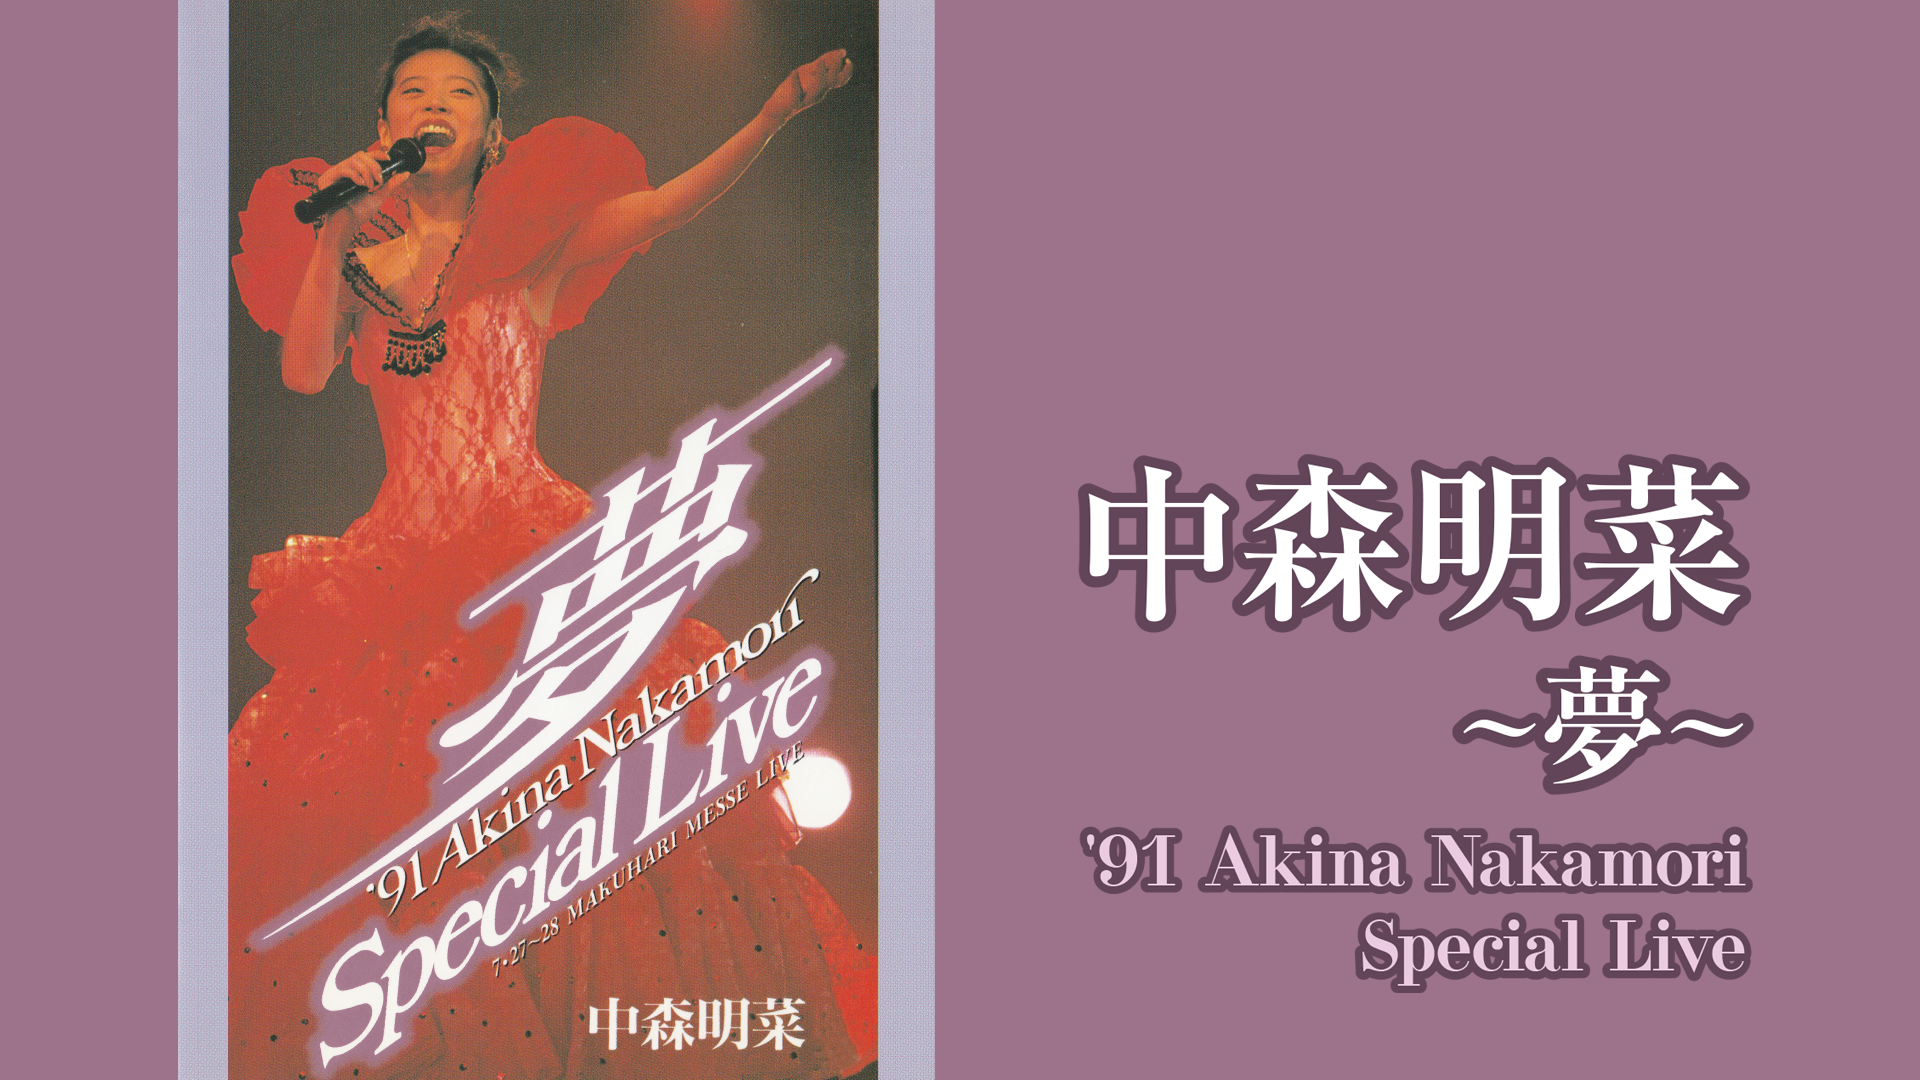 夢～ '91 Akina Nakamori Special Live(音楽・ライブ / 1992) - 動画配信 | U-NEXT  31日間無料トライアル